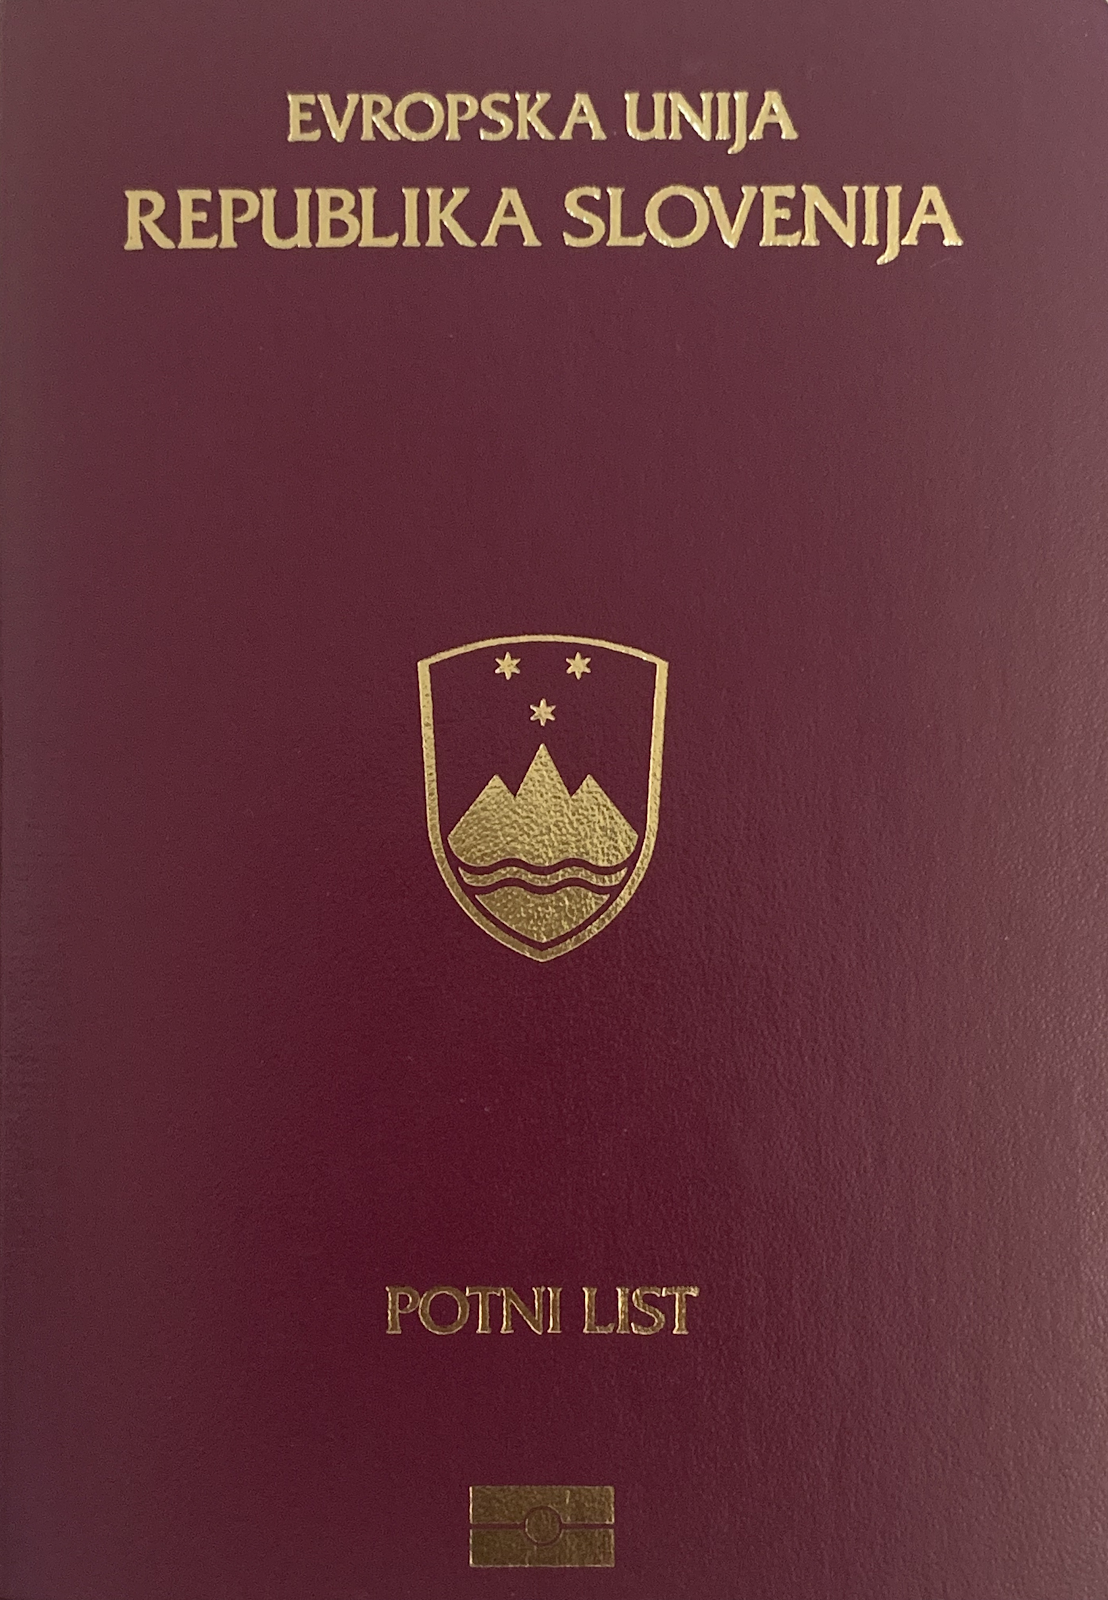 Slovenian passport cover